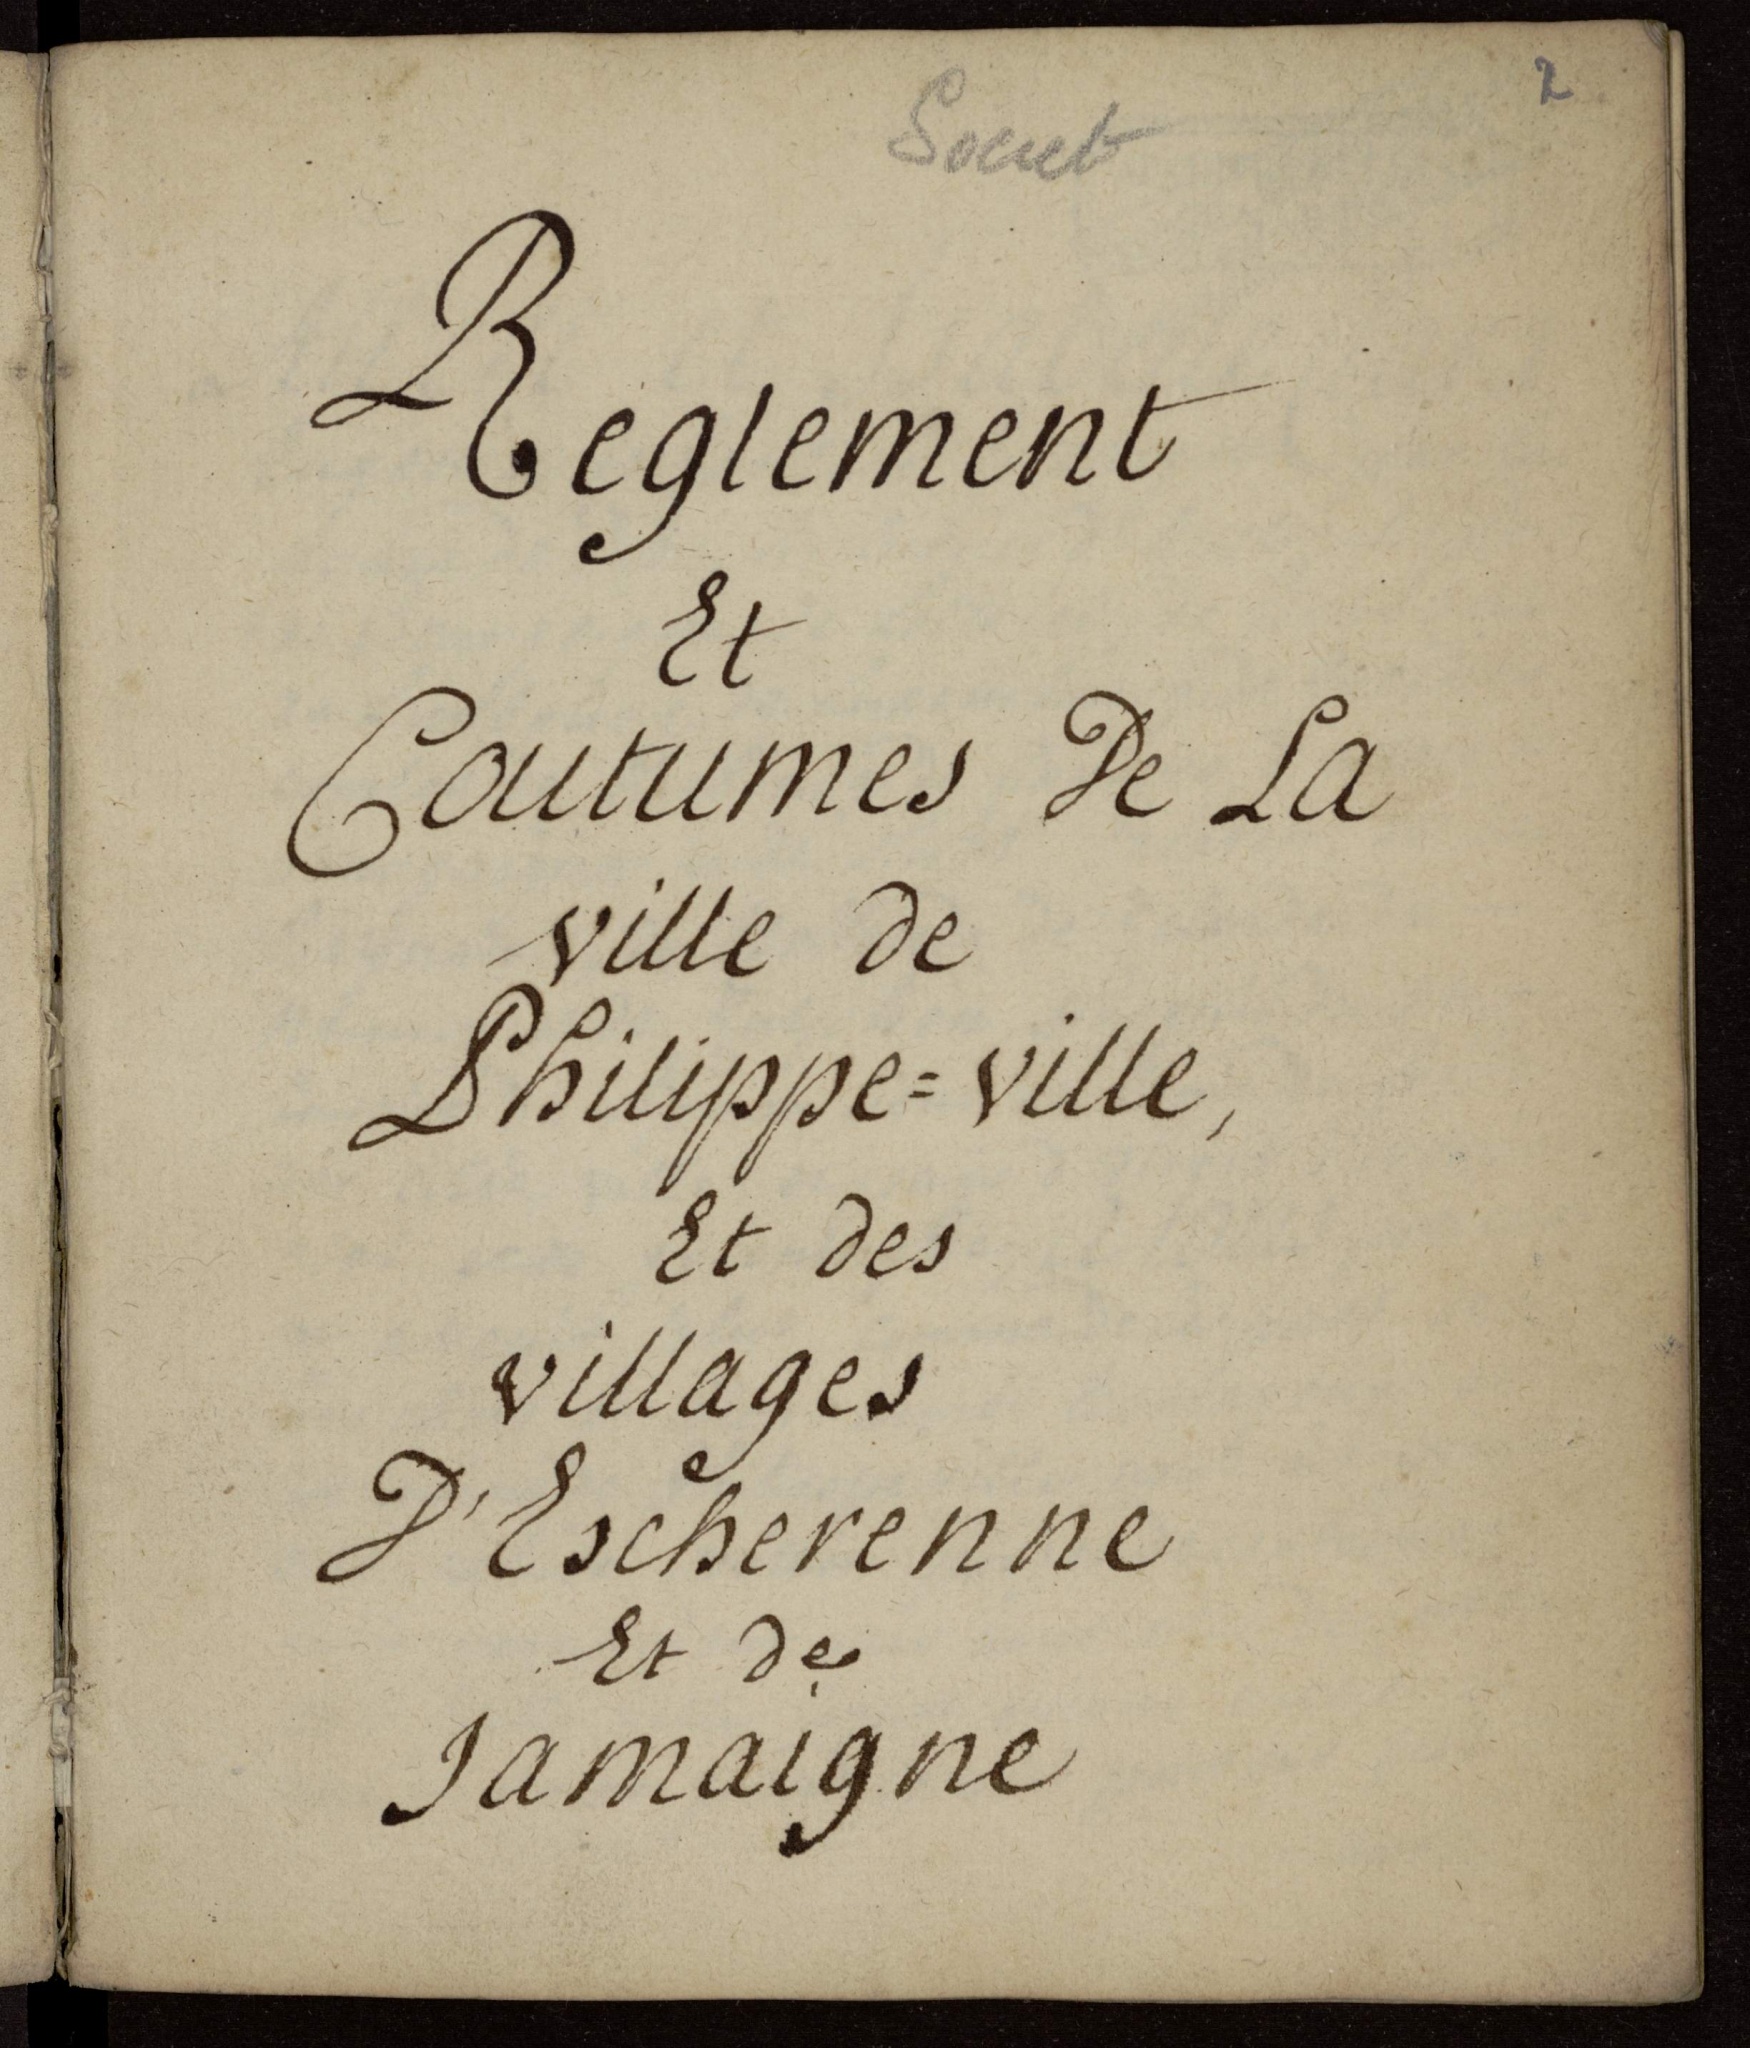 Coutumes de Philippeville, Escherenne et Jamaigne